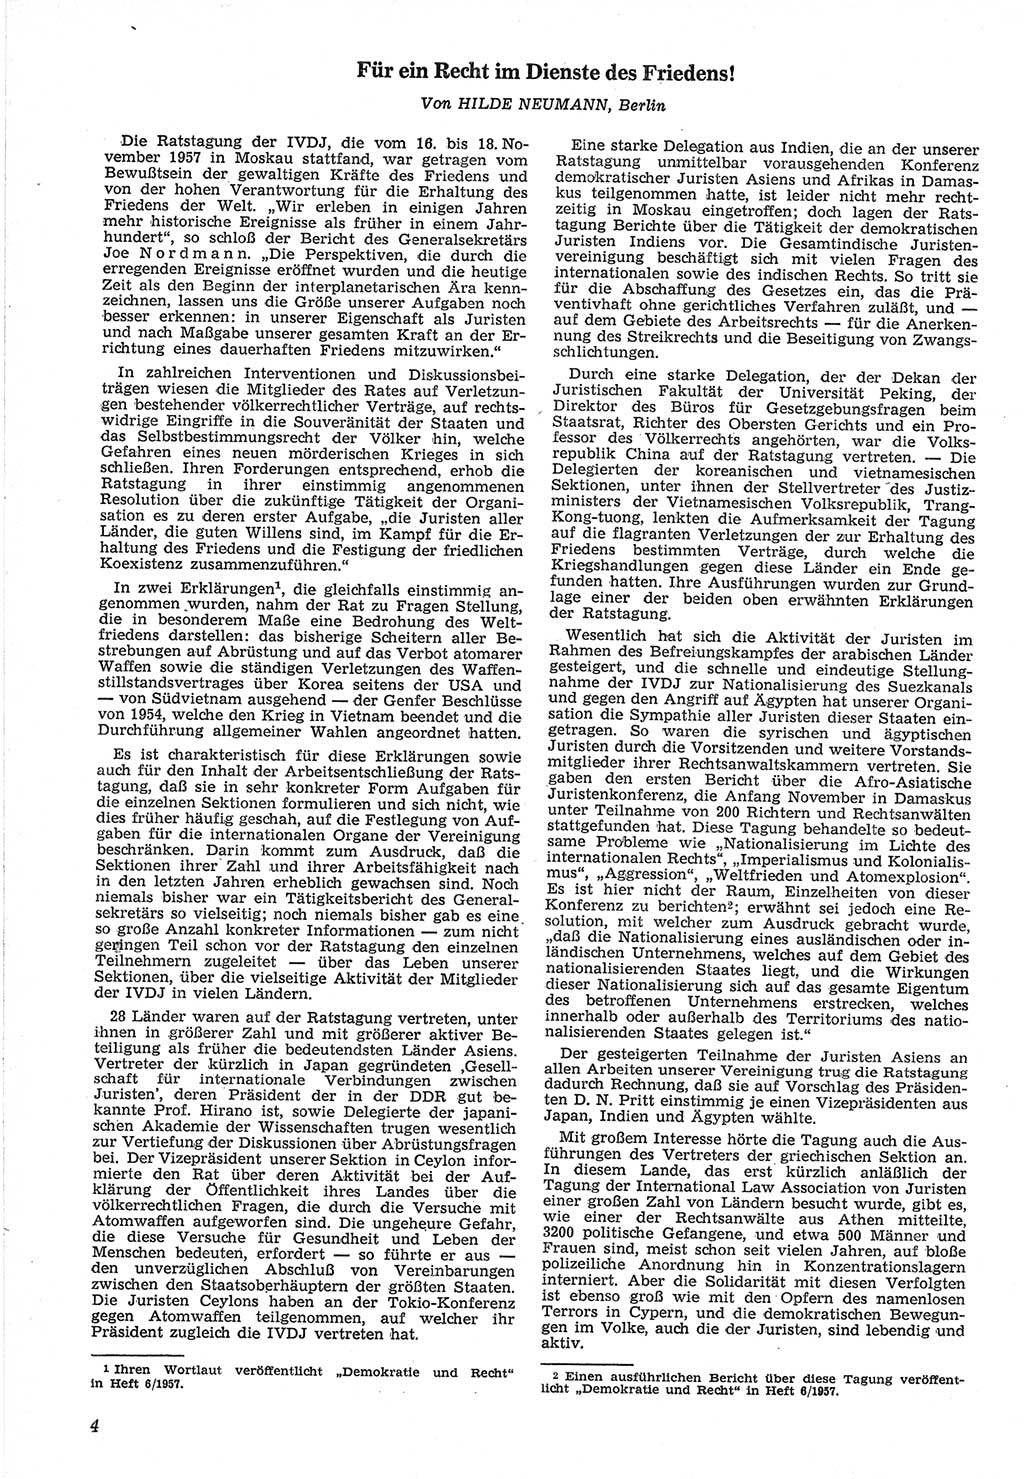 Neue Justiz (NJ), Zeitschrift für Recht und Rechtswissenschaft [Deutsche Demokratische Republik (DDR)], 12. Jahrgang 1958, Seite 4 (NJ DDR 1958, S. 4)